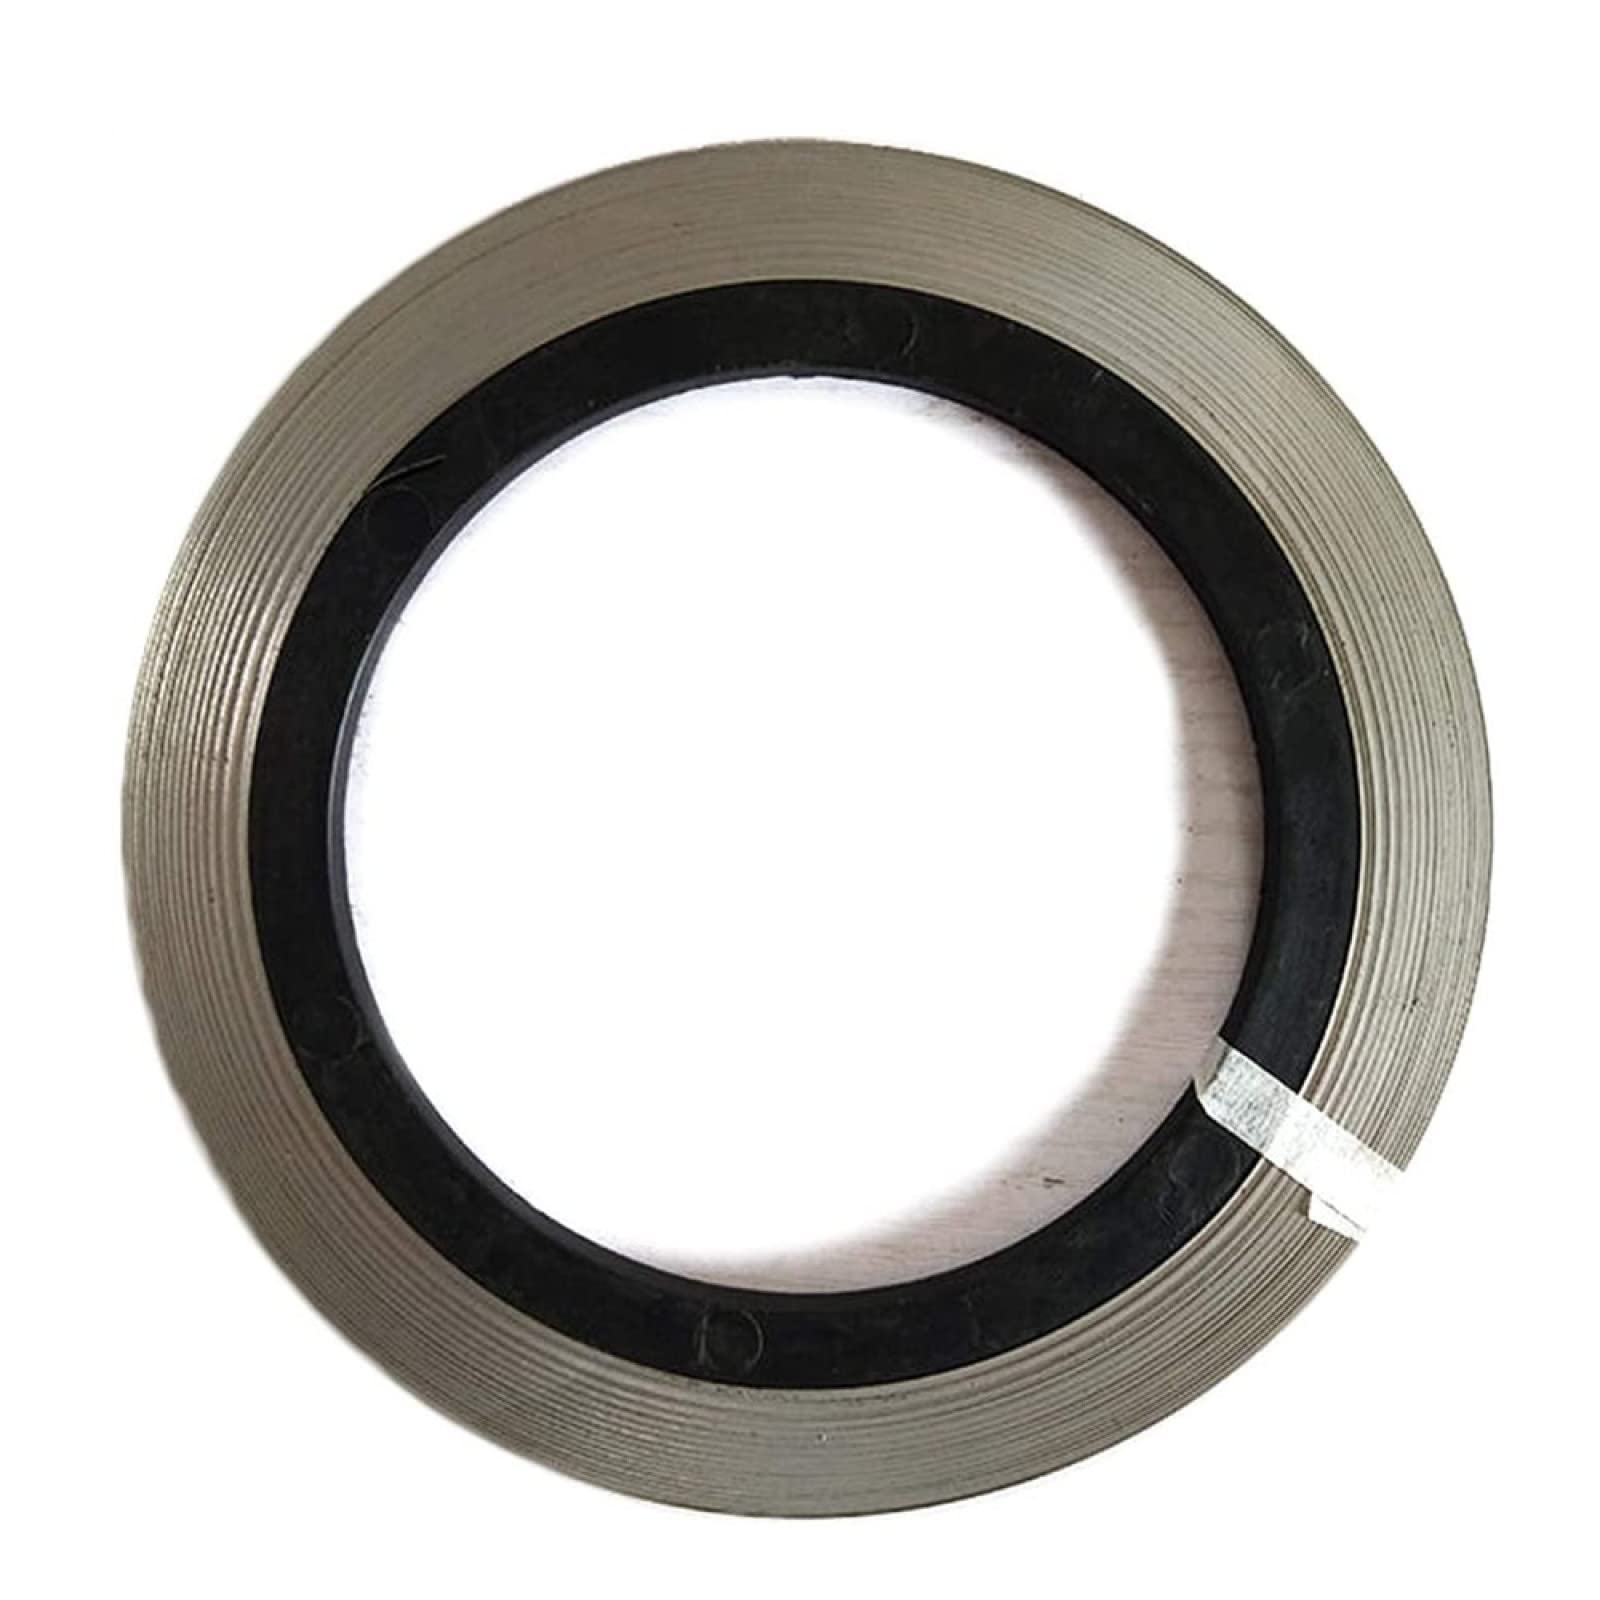 Nickel-Chrom-Flachband Für Haushaltsgeräte, Flachdraht-Heizband, 5 M Länge, 12 Mm Breite, Dicke,0,3mm